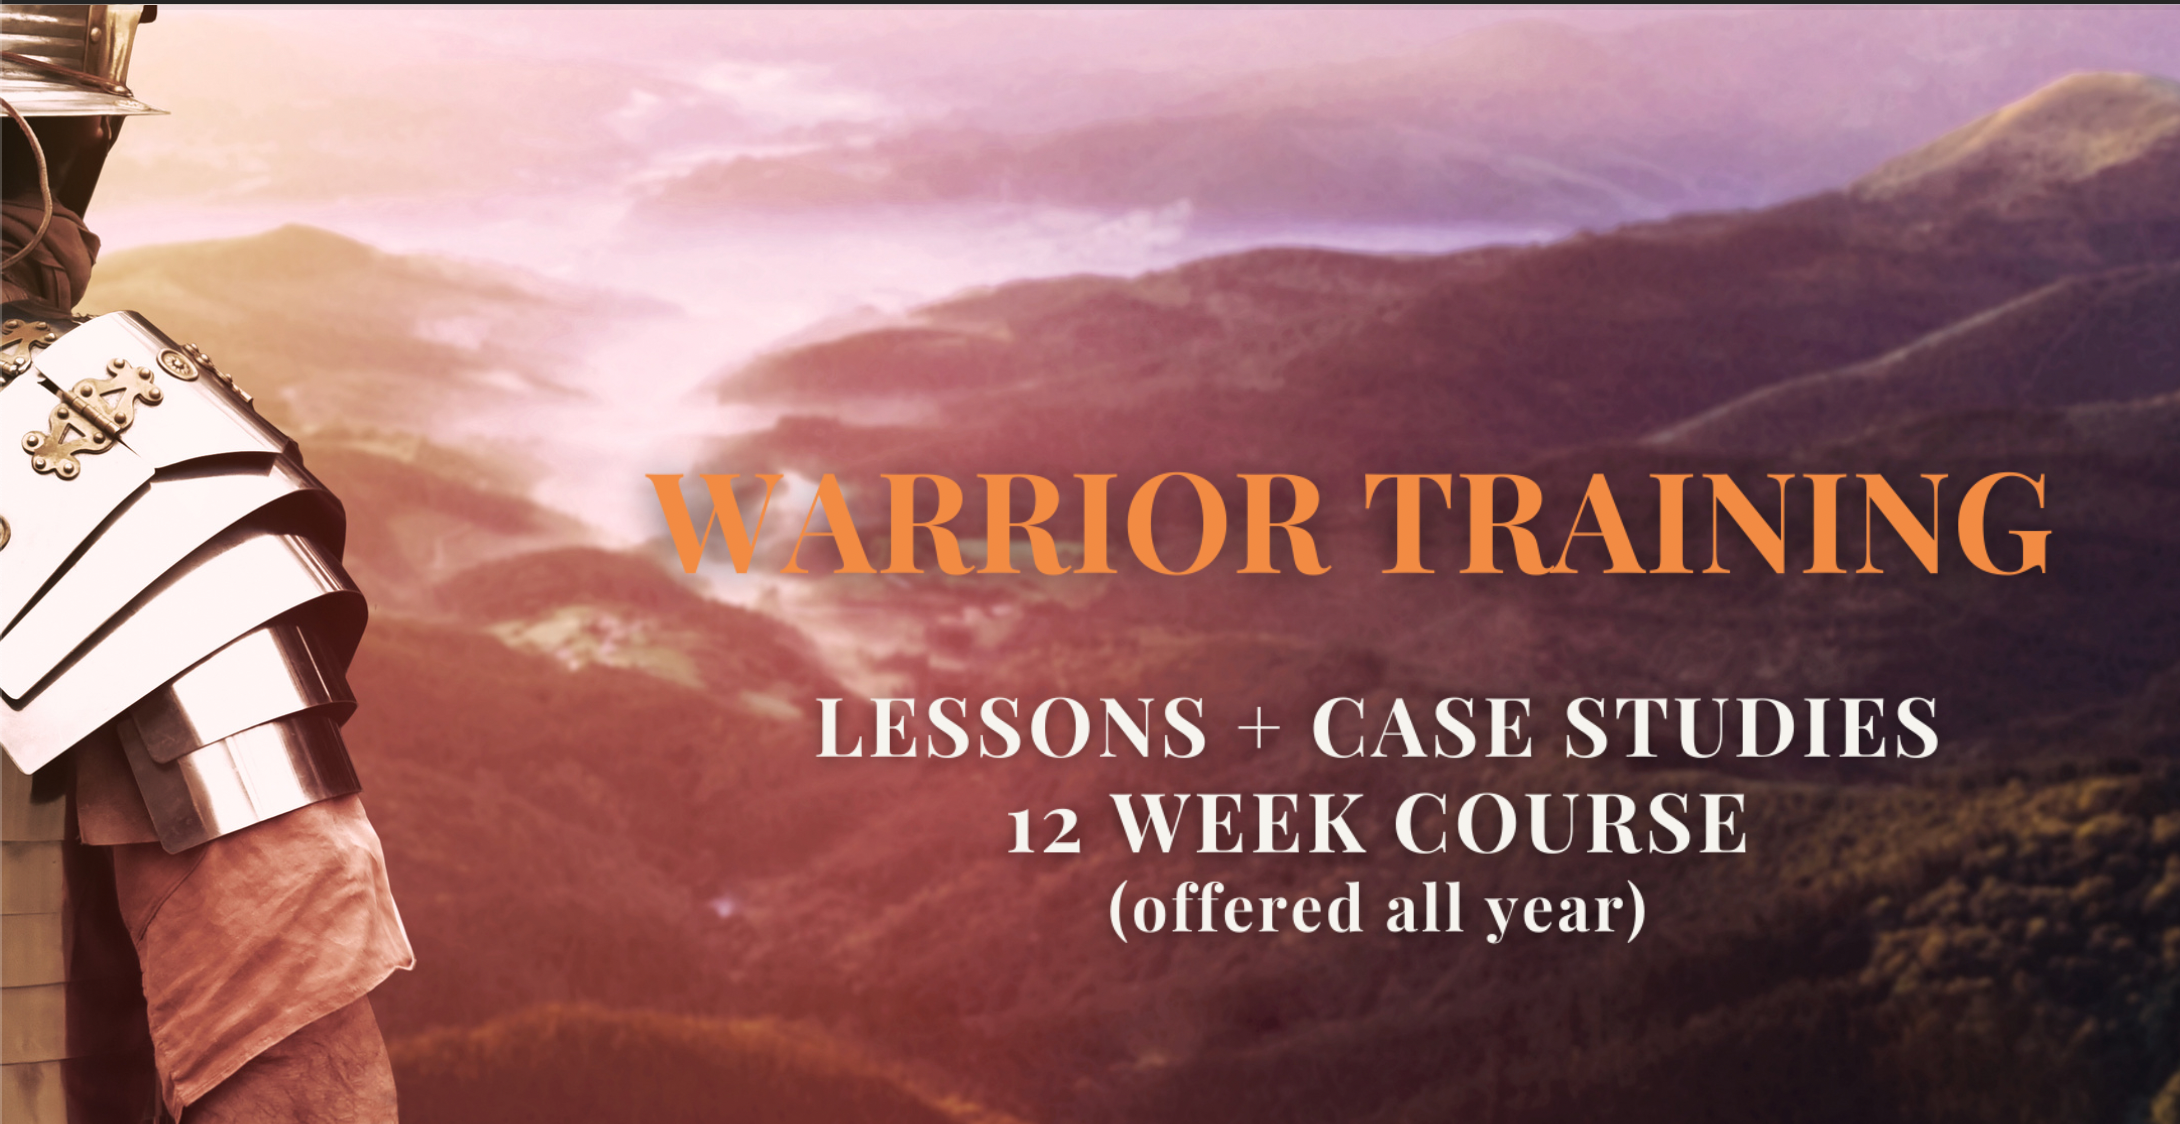 Warrior Training Lessons + Case Studies